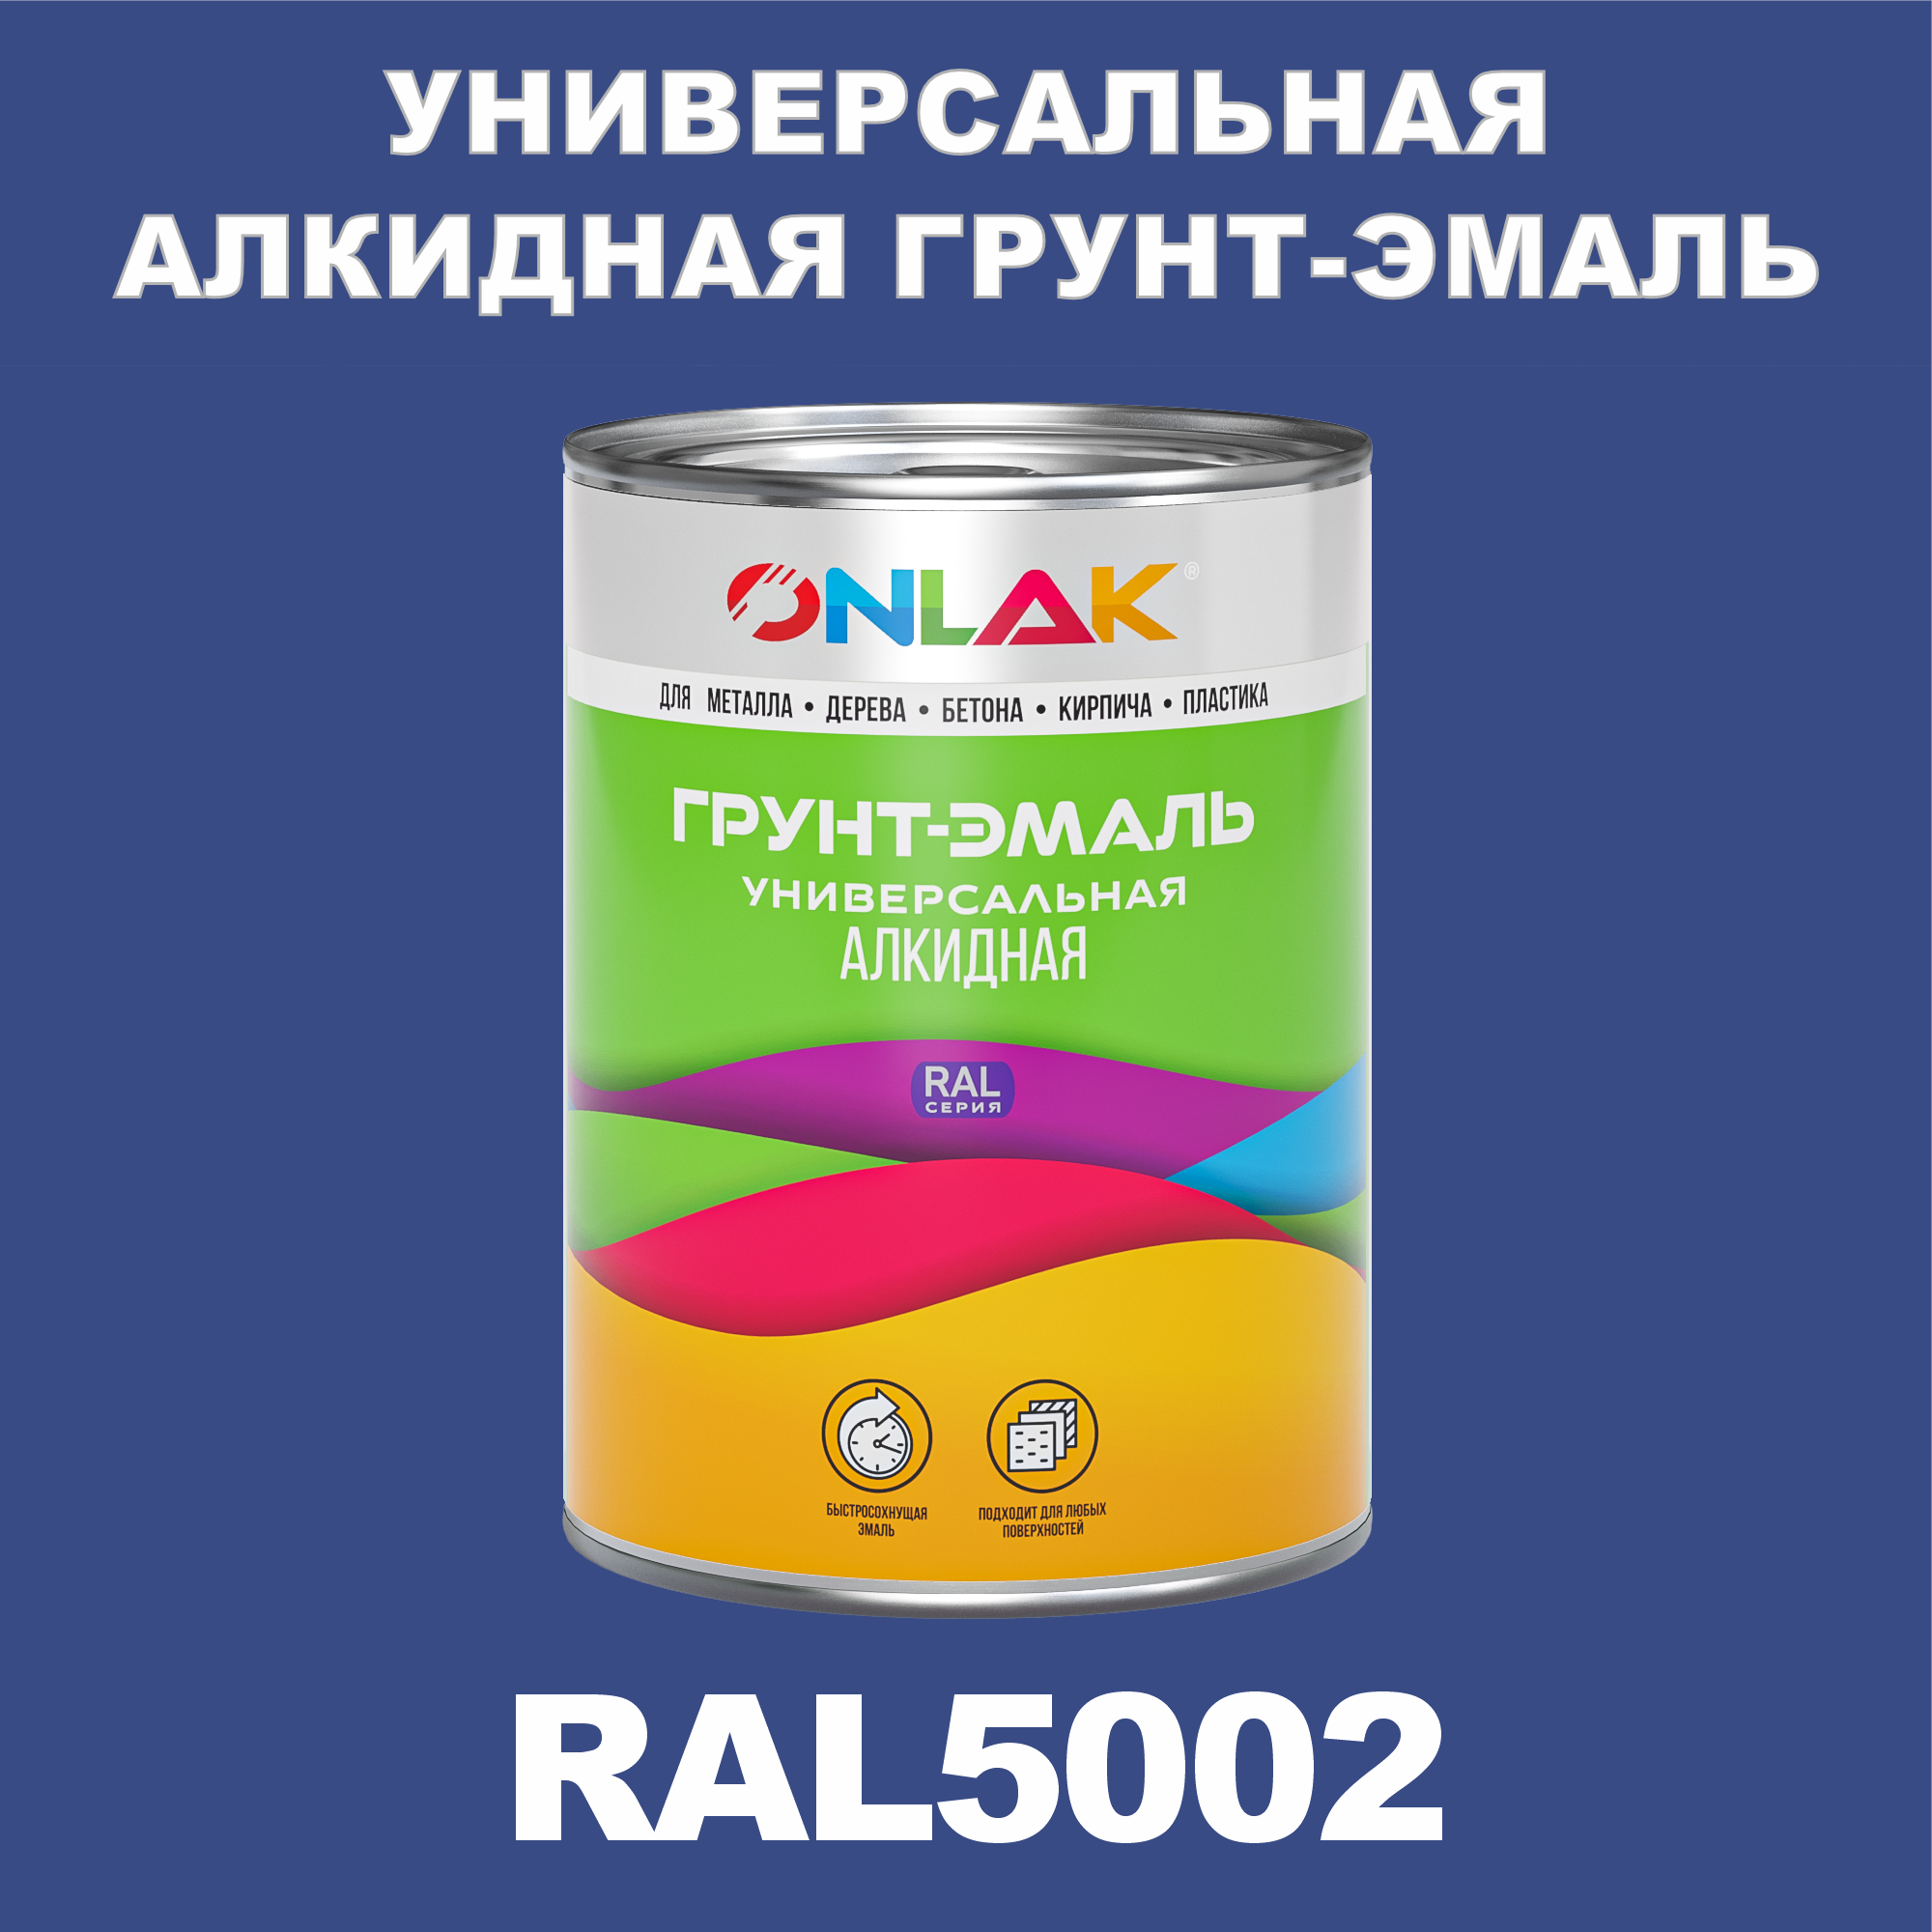 Грунт-эмаль ONLAK 1К RAL5002 антикоррозионная алкидная по металлу по ржавчине 1 кг